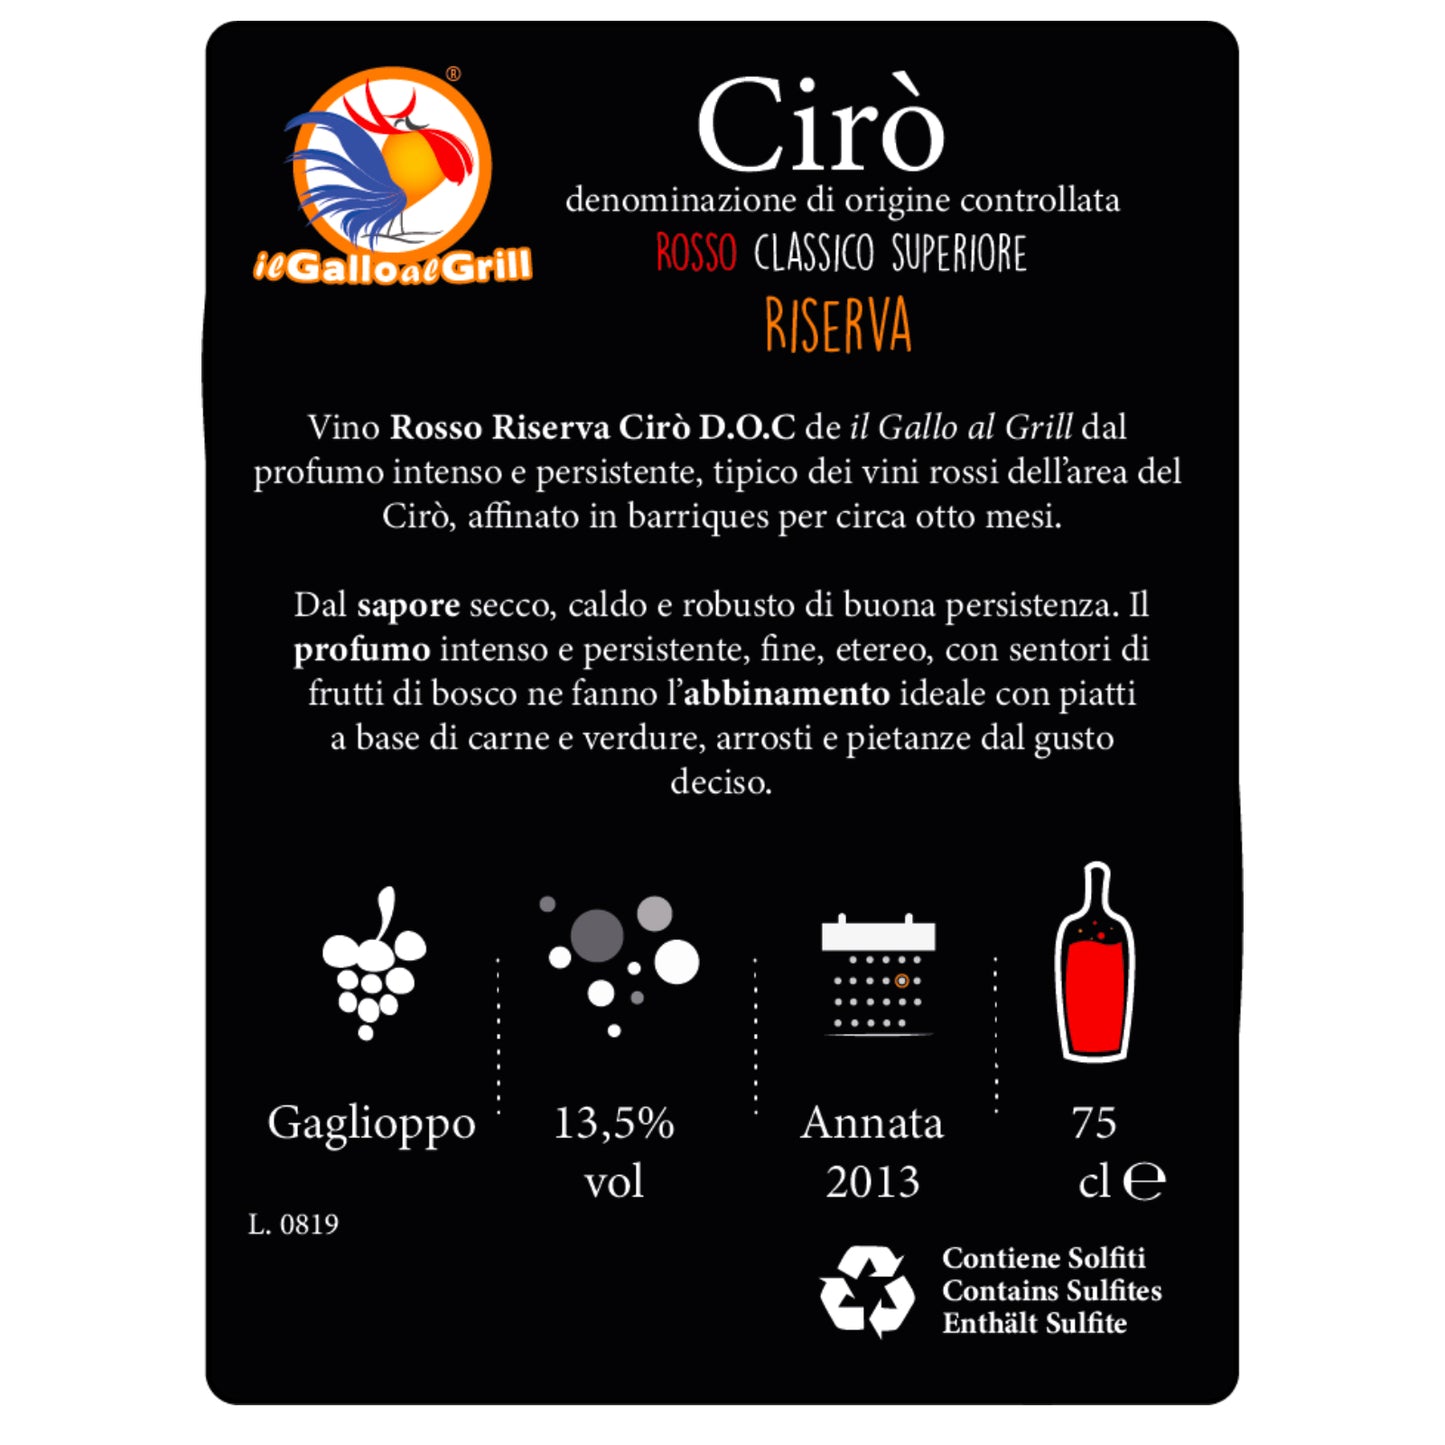 Cirò Rosso Classico Superiore - Riserva - Calabria DOC